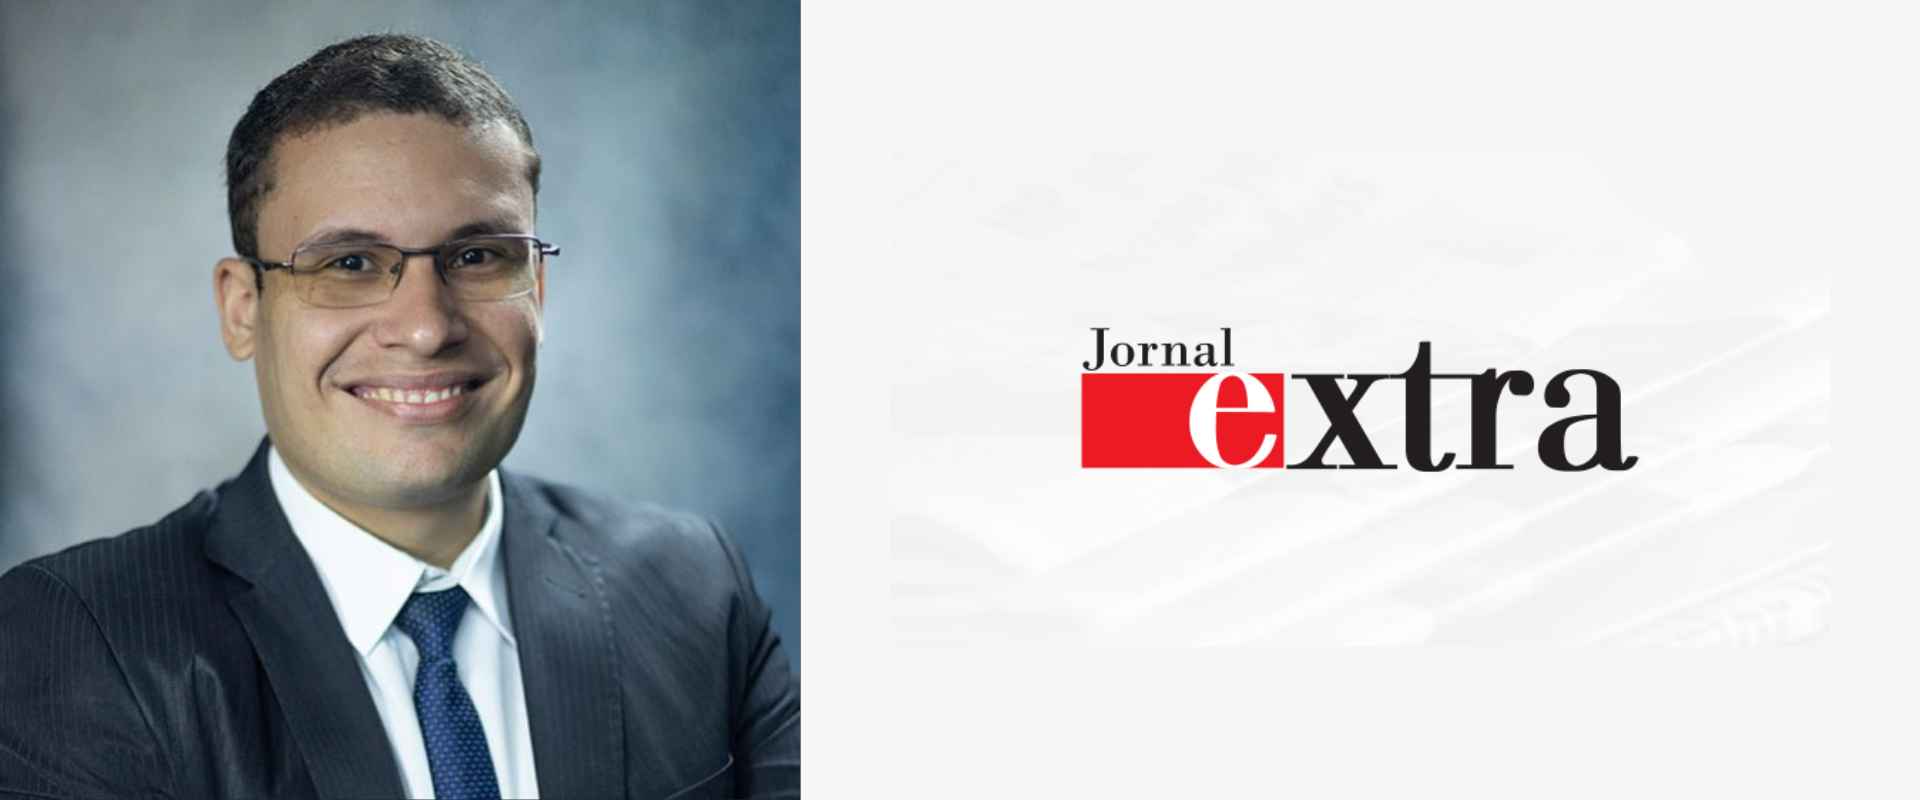 Em contribuição ao Jornal Extra, o professor Rodrigo Leite, da seu parecer sobre a reforma tributária e sua modificação atual.